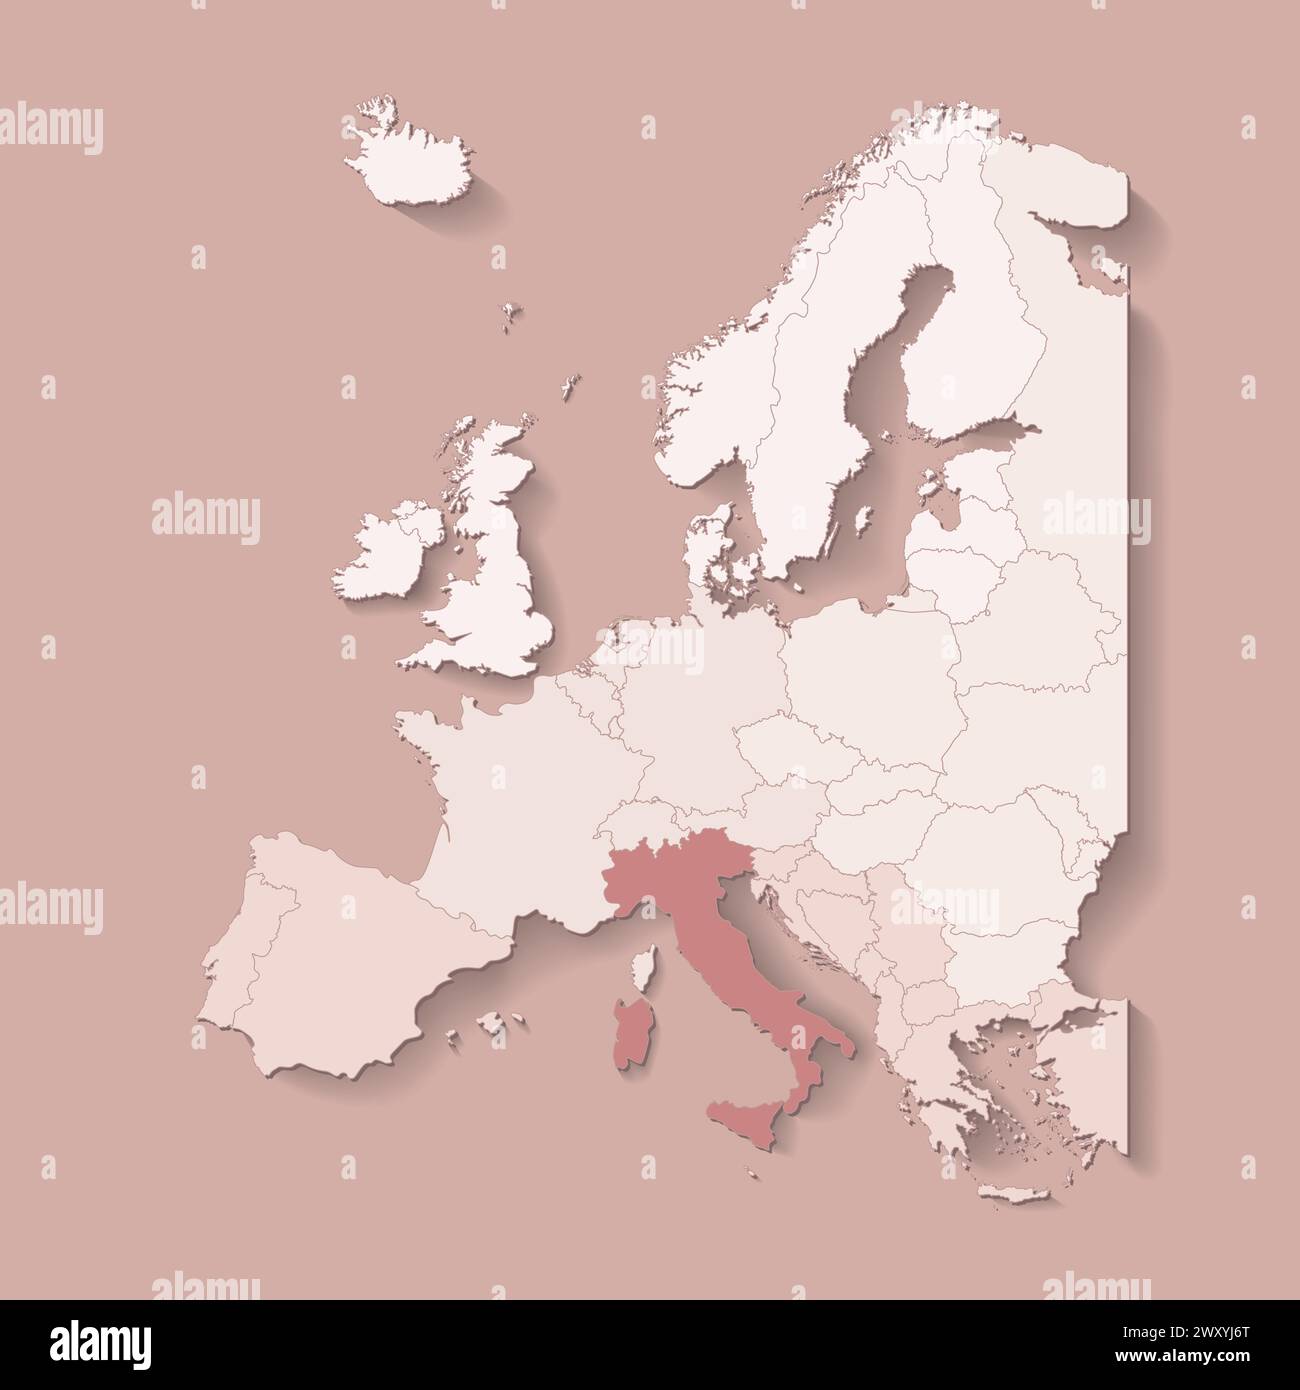 Illustrazione vettoriale con terra europea con confini di stati e paese contrassegnato Italia. Mappa politica in colori marroni con l'occidentale, il sud e ecc. regi Illustrazione Vettoriale